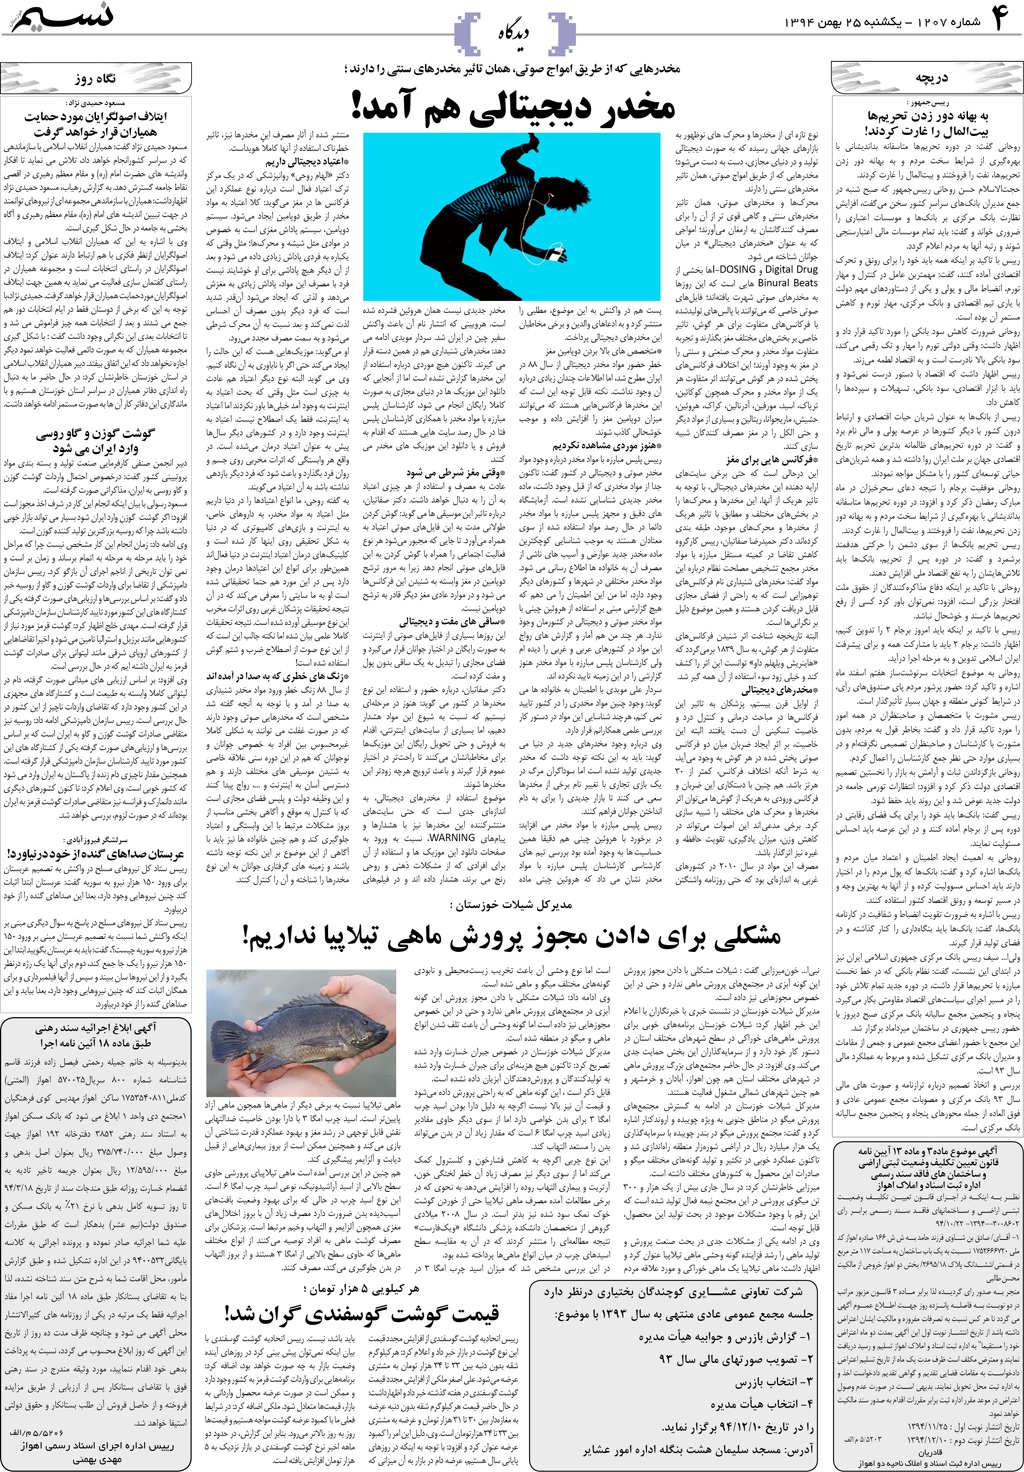 صفحه دیدگاه روزنامه نسیم شماره 1207